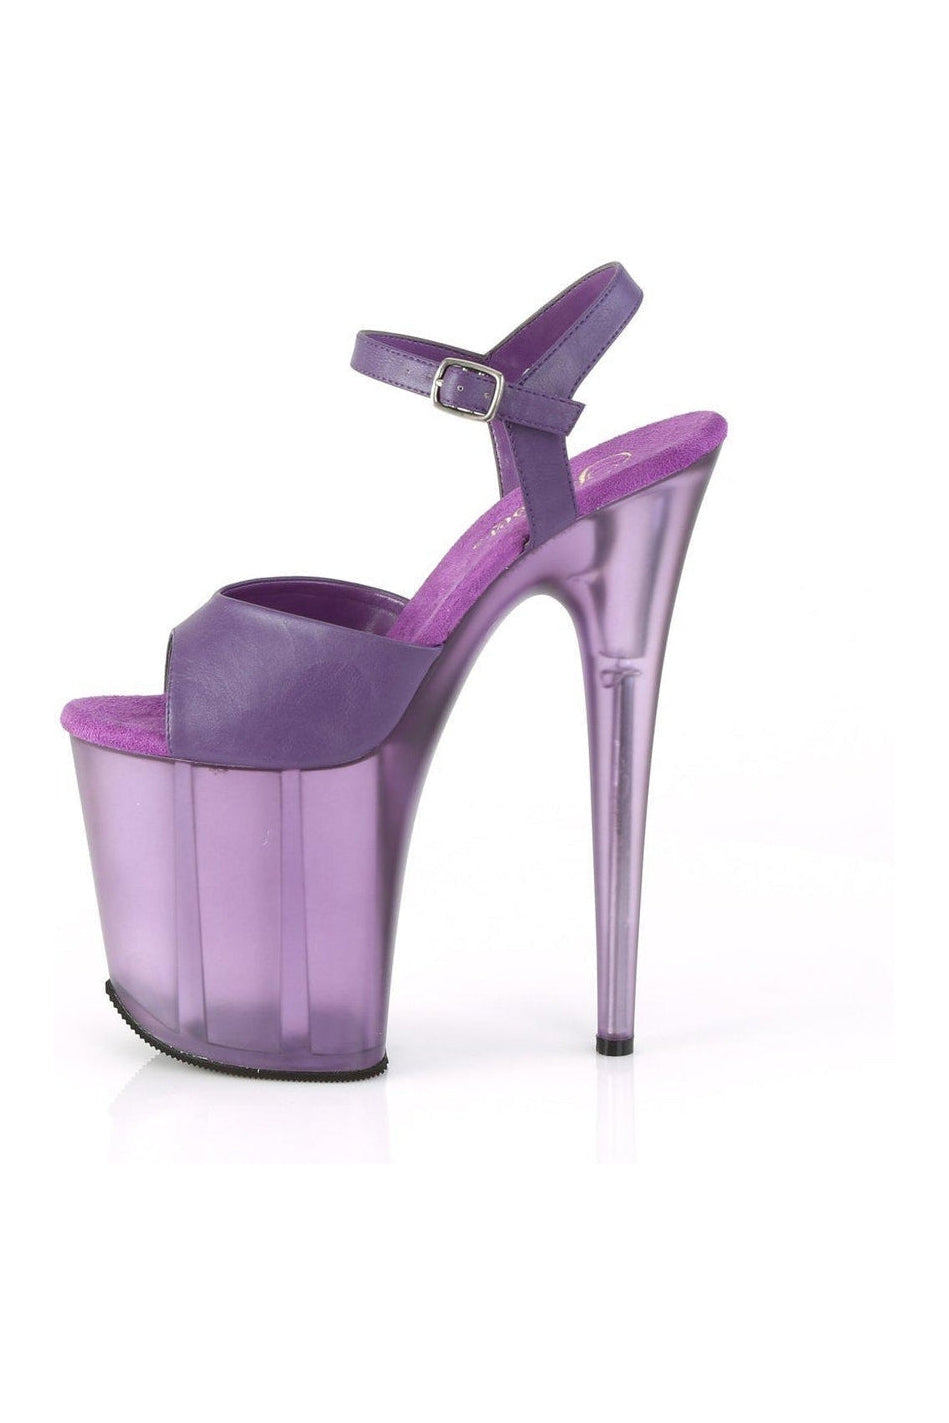 FLAMINGO-809T Platform Sandal | Purple Faux Leather-Sandals-Pleaser-SEXYSHOES.COM